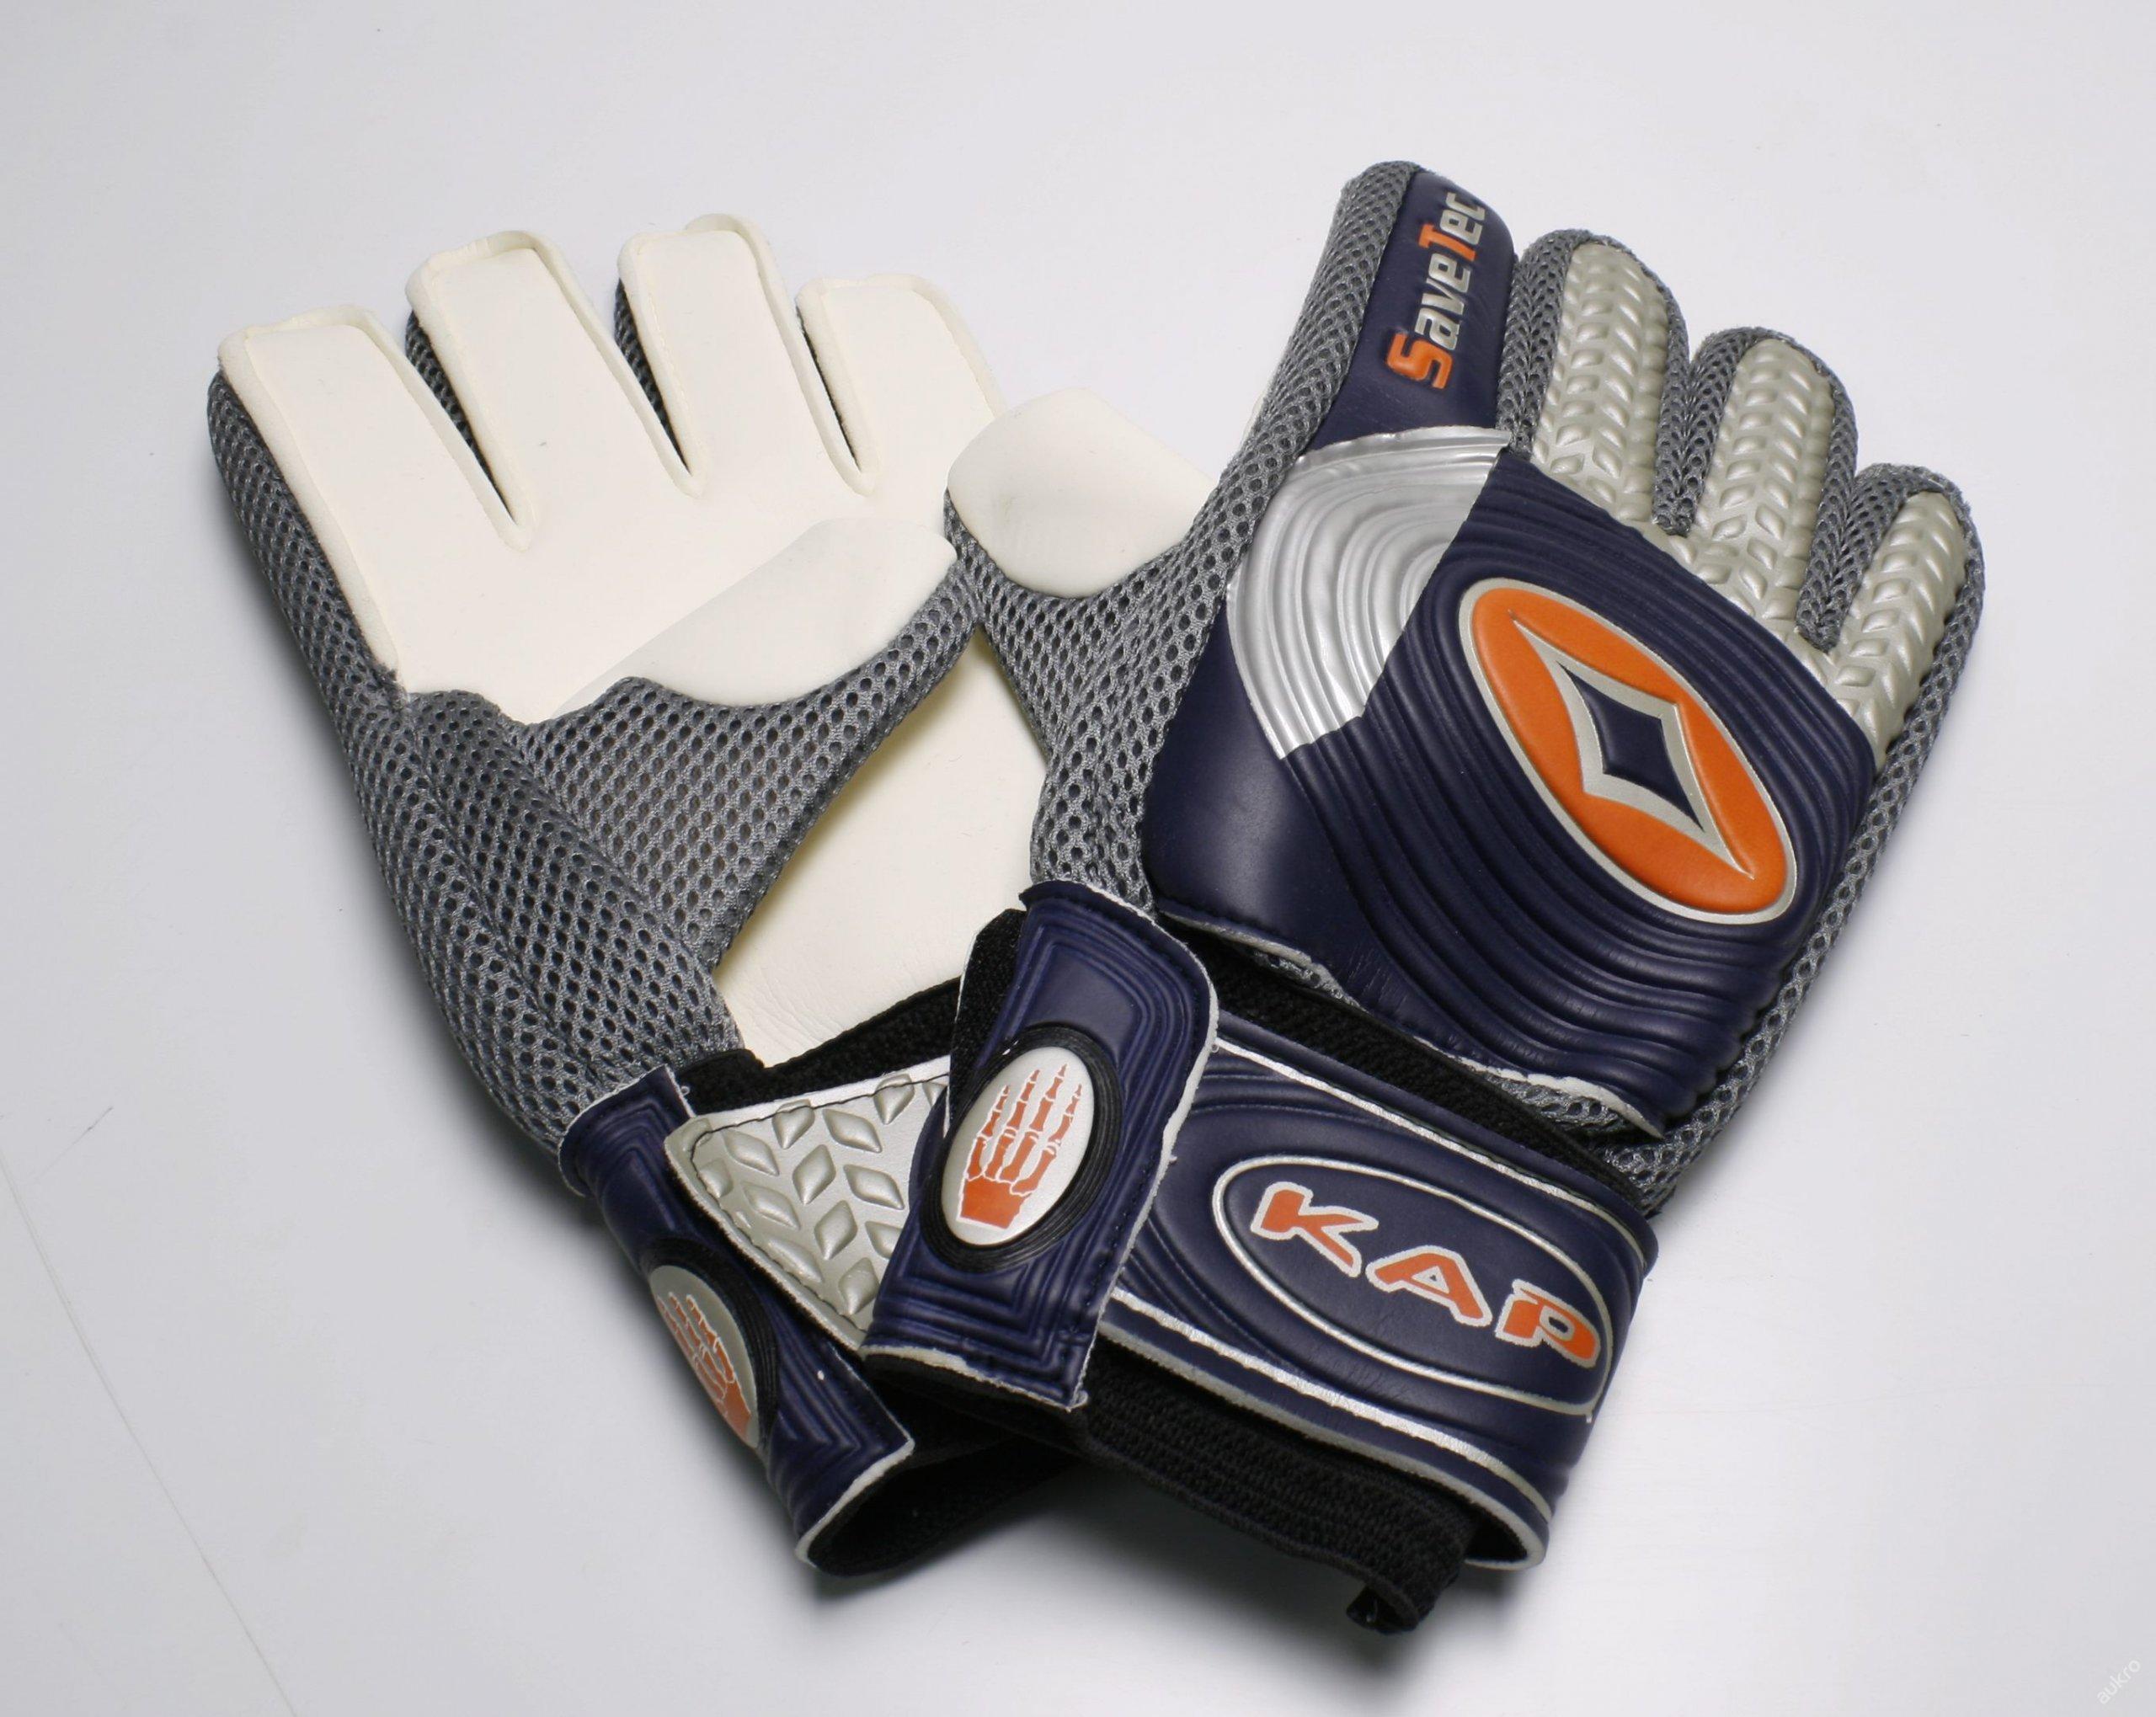 Futbalové brankárske rukavice SaveTec SR, KA-6102 - Vybavenie pre kolektívne športy